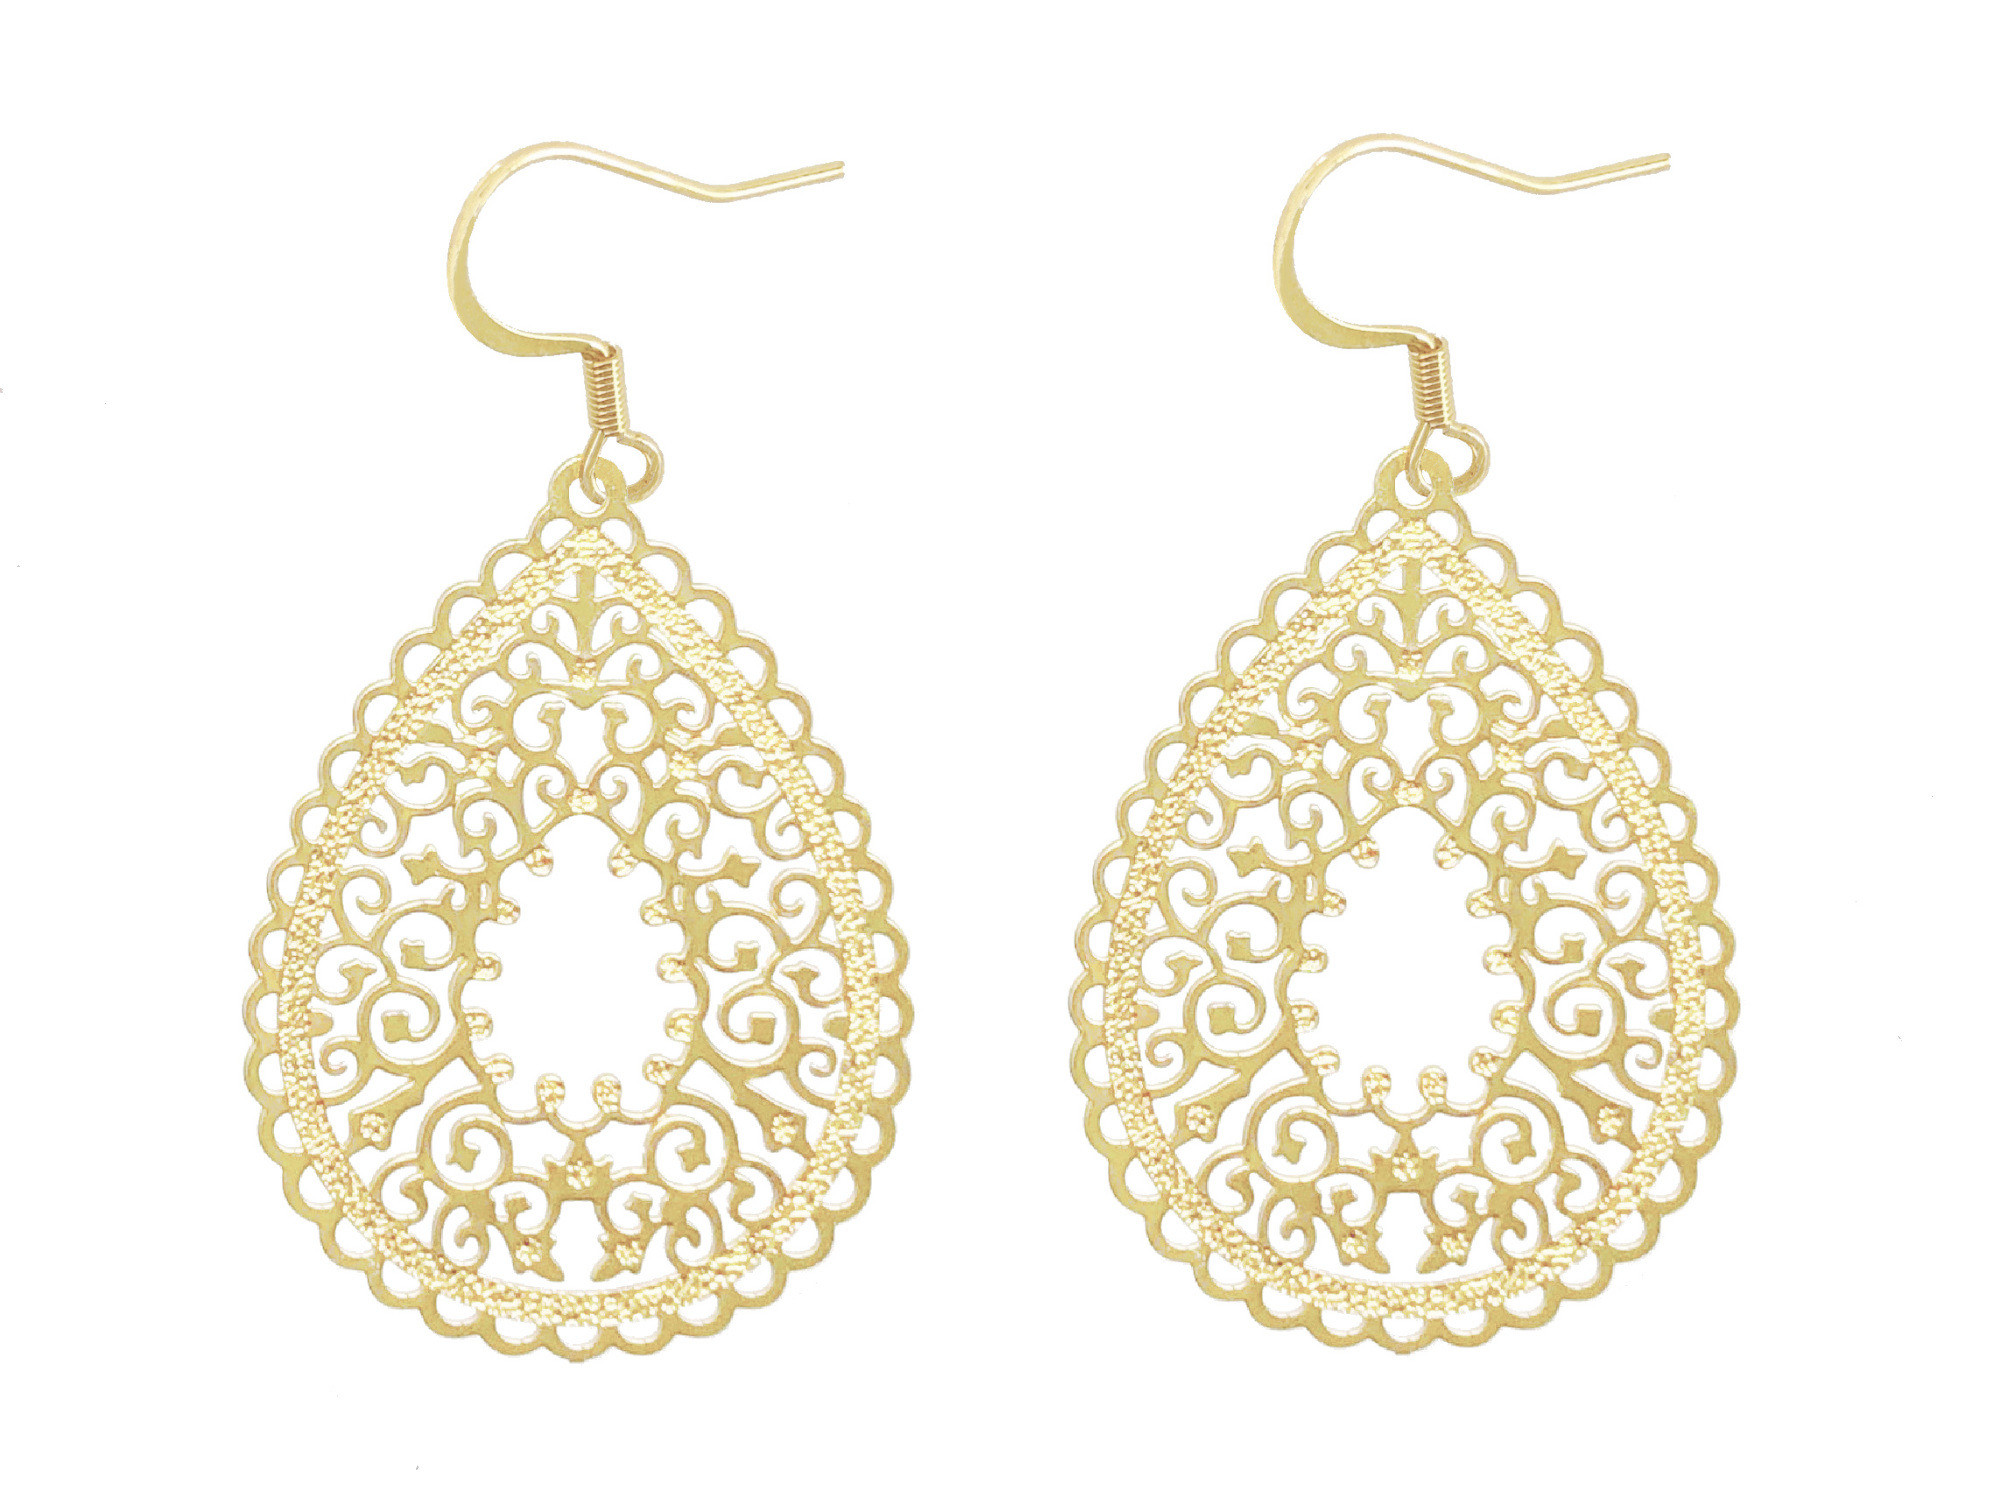 Boucles doreilles JOURIYYA pendantes acier inoxydable doré or pendentif goutte fleur graphique minimaliste